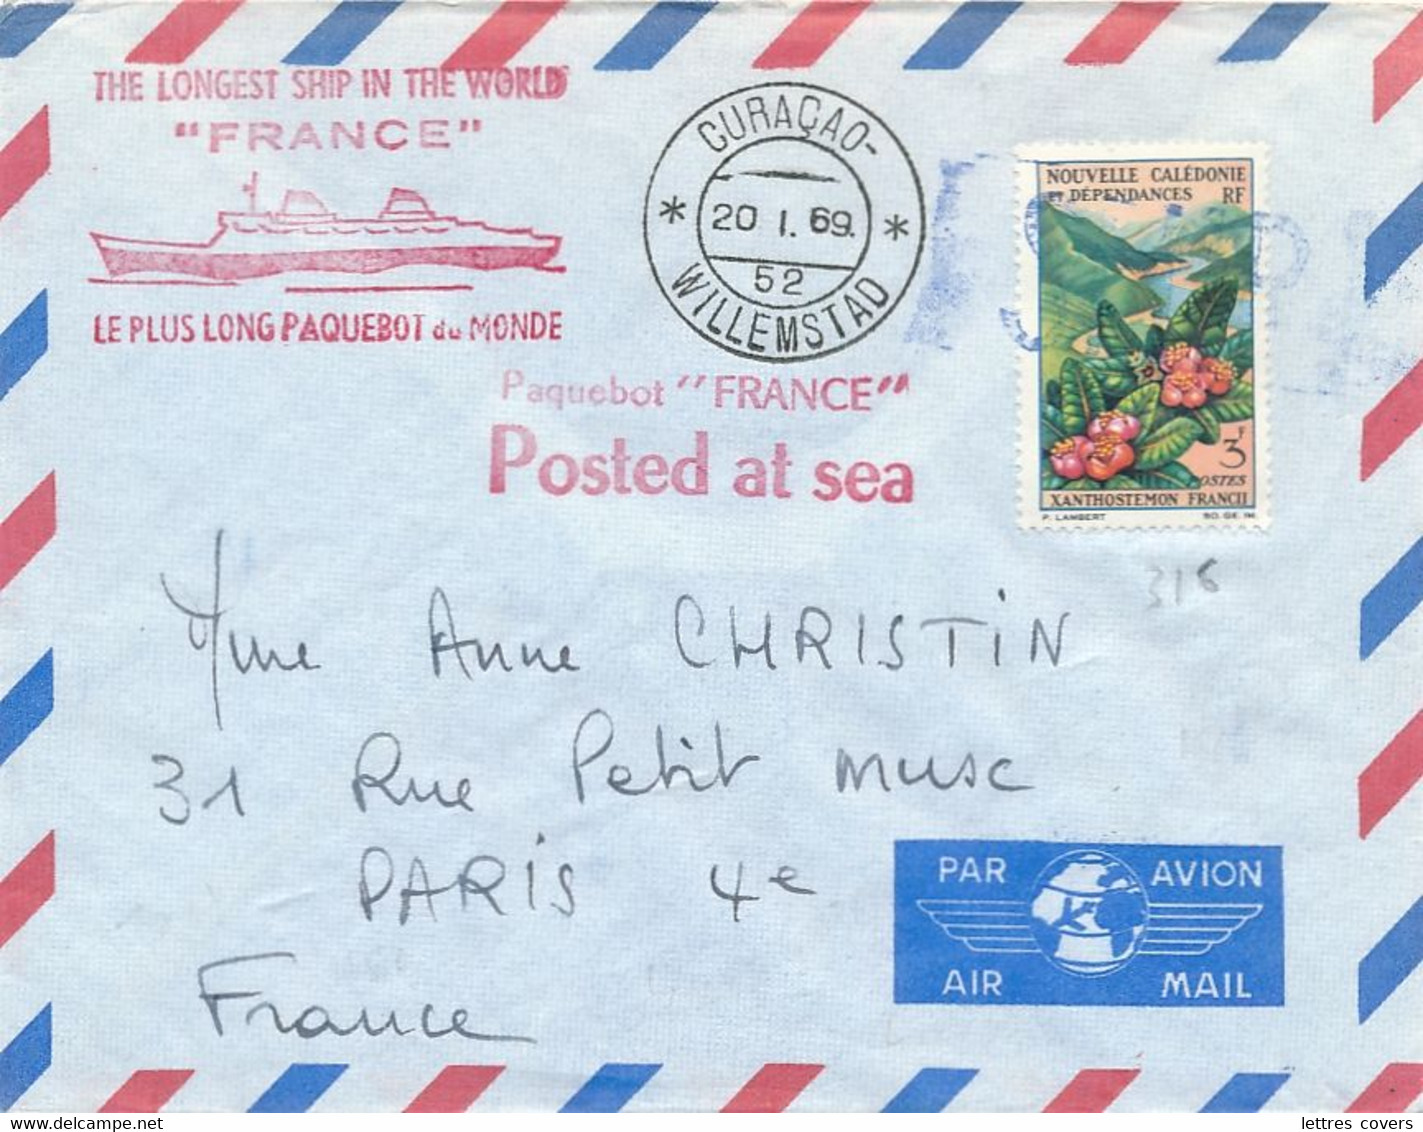 Nouvelle Calédonie 3f + CàD " CURAÇAO WILLEMSTAD 20/1/69 " Lettre Postée à Bord Paquebot " FRANCE " Seapost Maritime - Covers & Documents